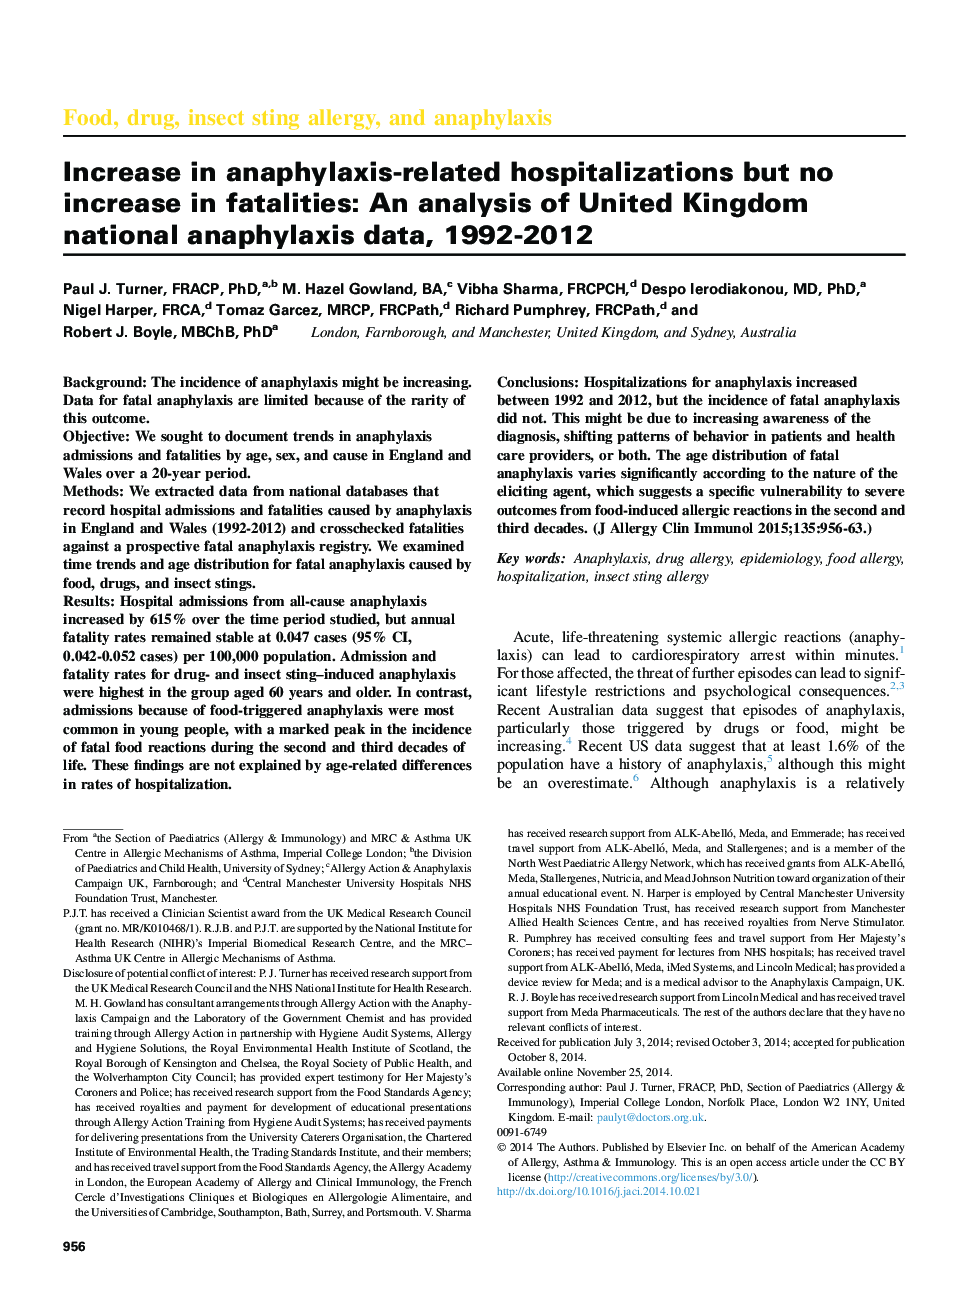 غذا، دارو، آلرژی زخم حشرات و آنافیلاکسی افزایش در بستری های مرتبط با آنافیلاکسی، اما افزایش تلفات: تجزیه و تحلیل داده های آنافیلاکسی ملی انگلستان، 1992-2012 